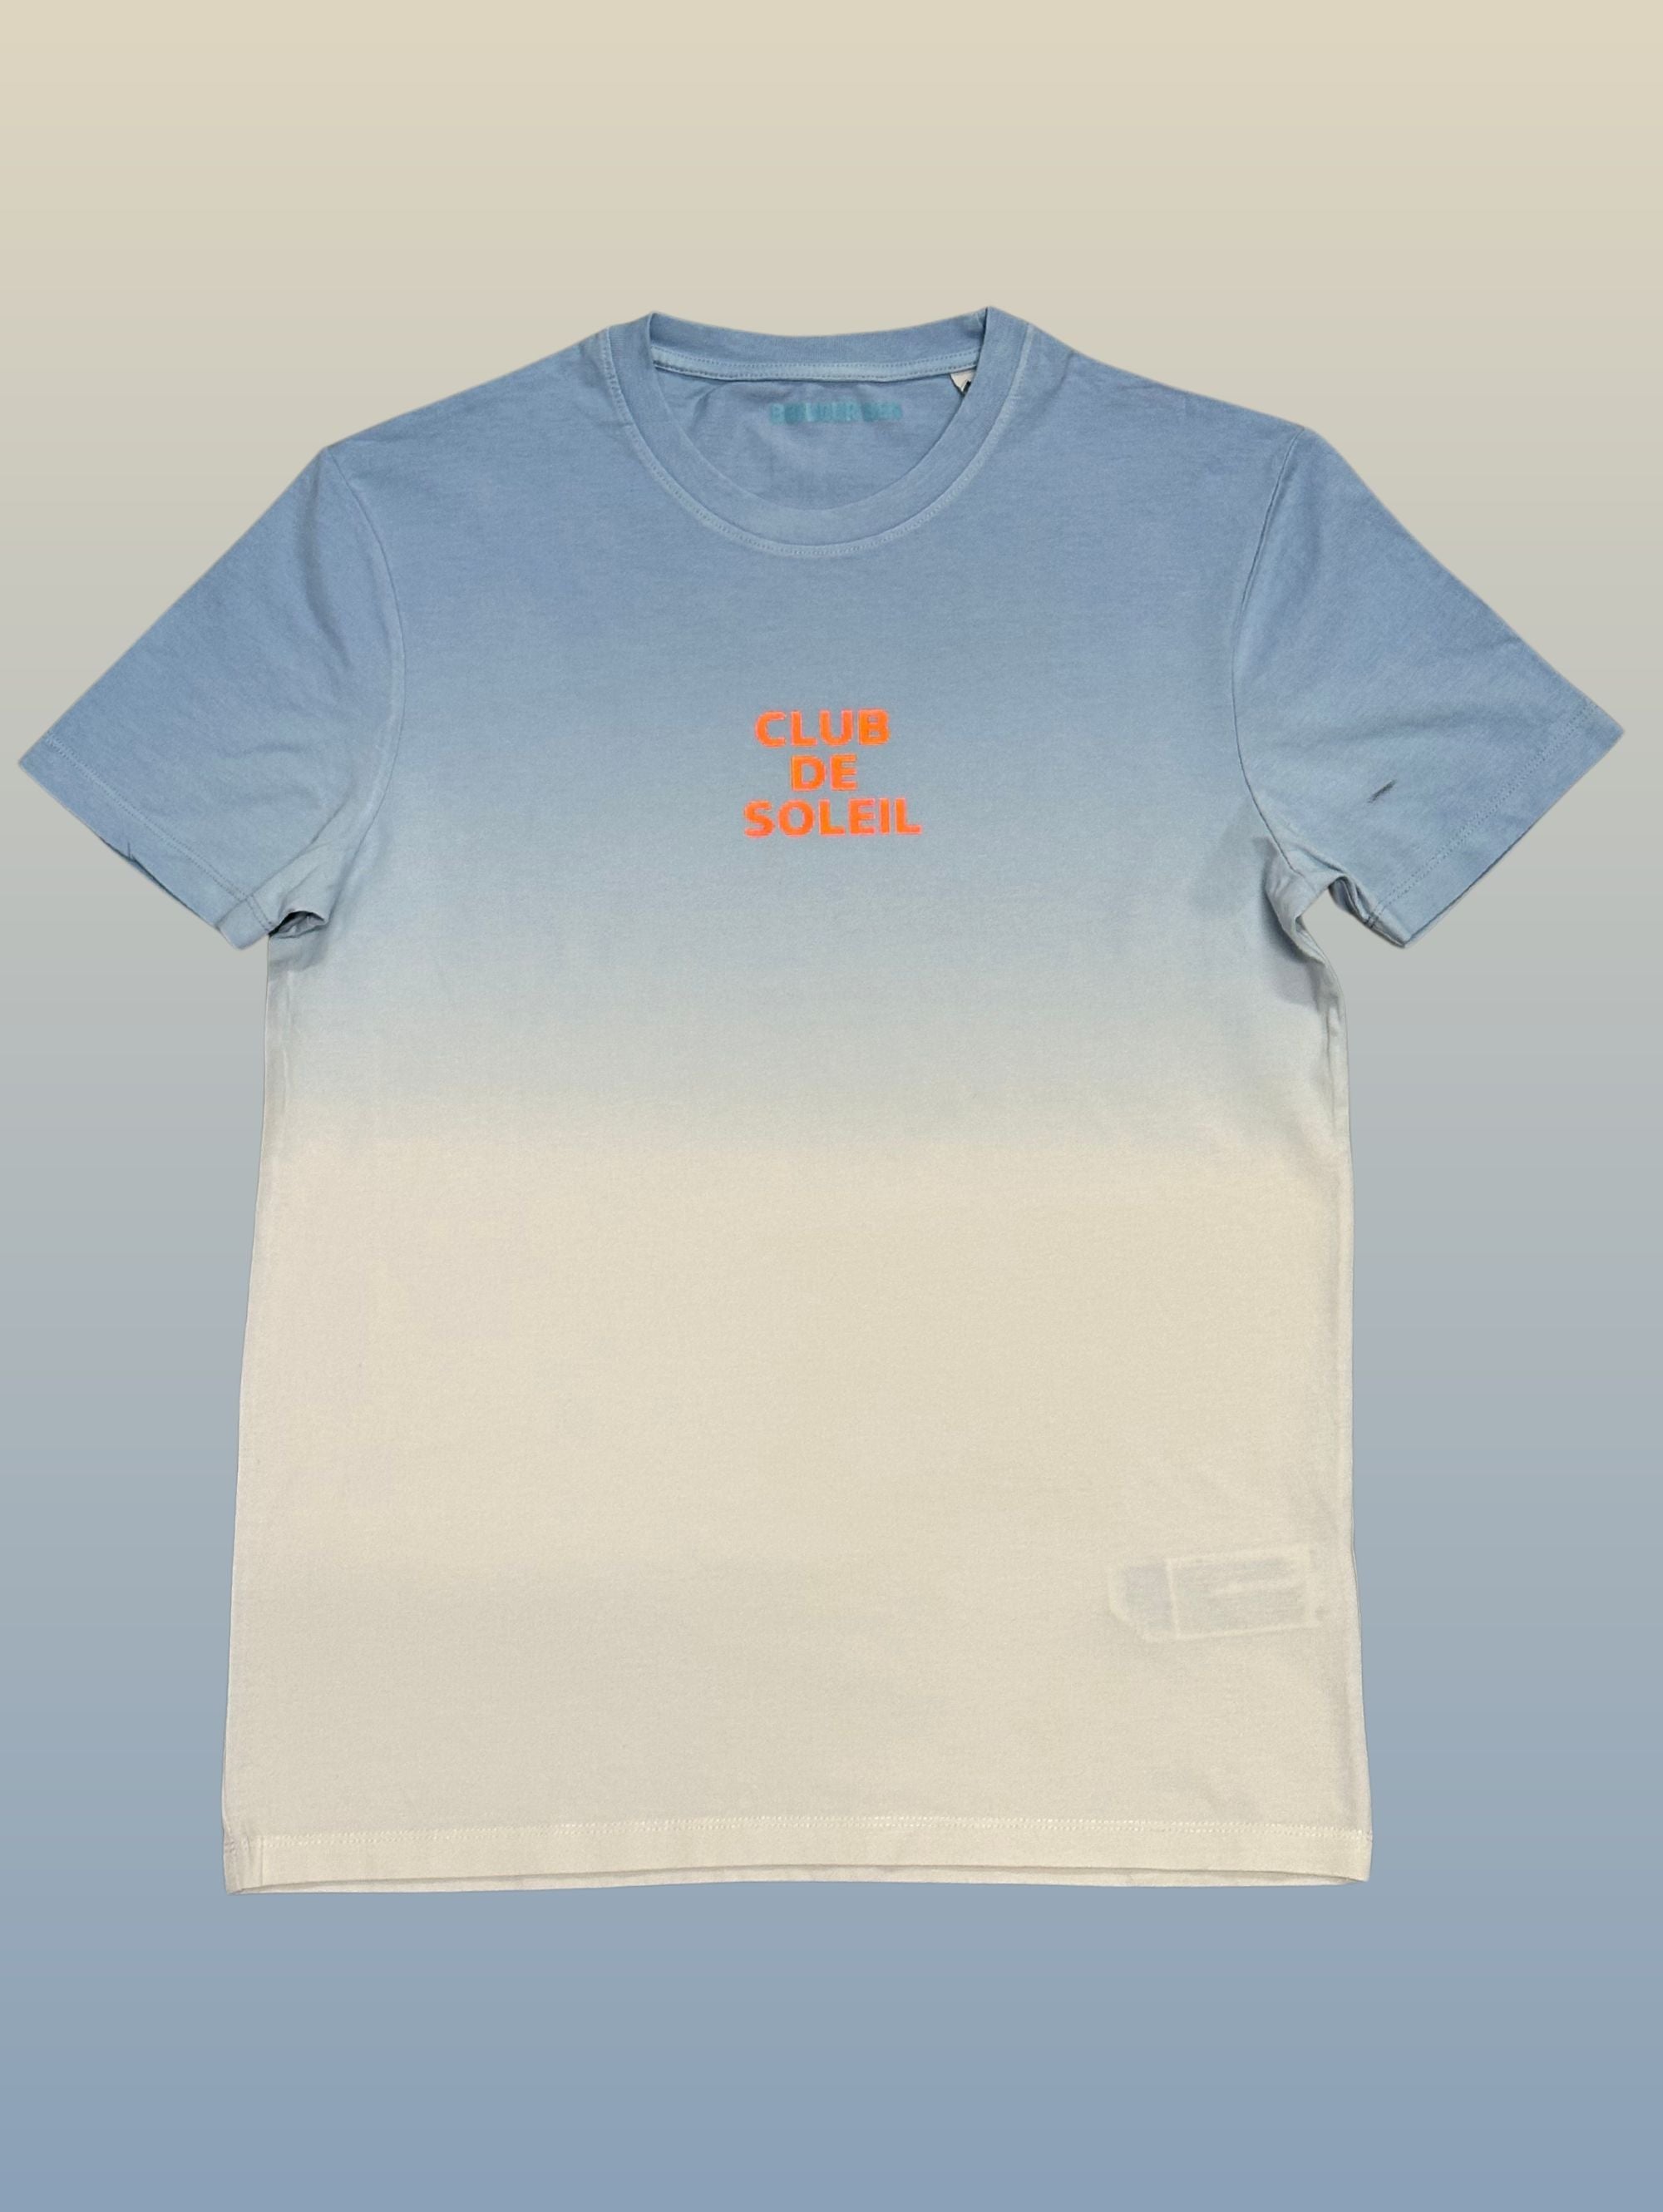 Club de Soleil T-Shirt - Blau Dip Dye